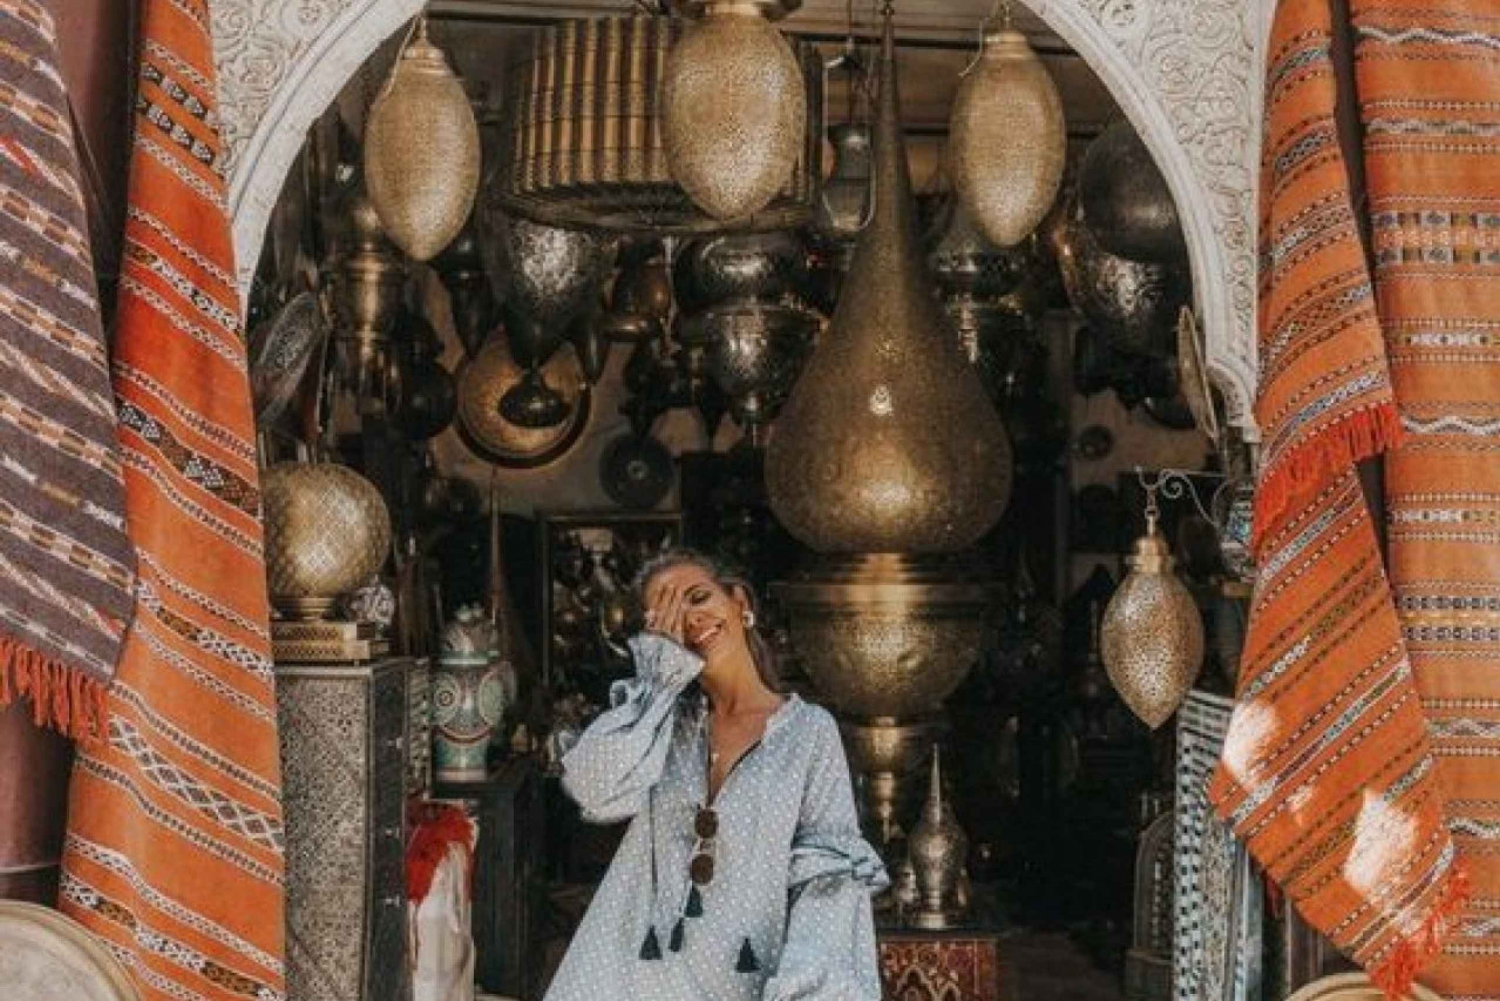 Marrakech: Privat shopping tour in the hidden gems of souk